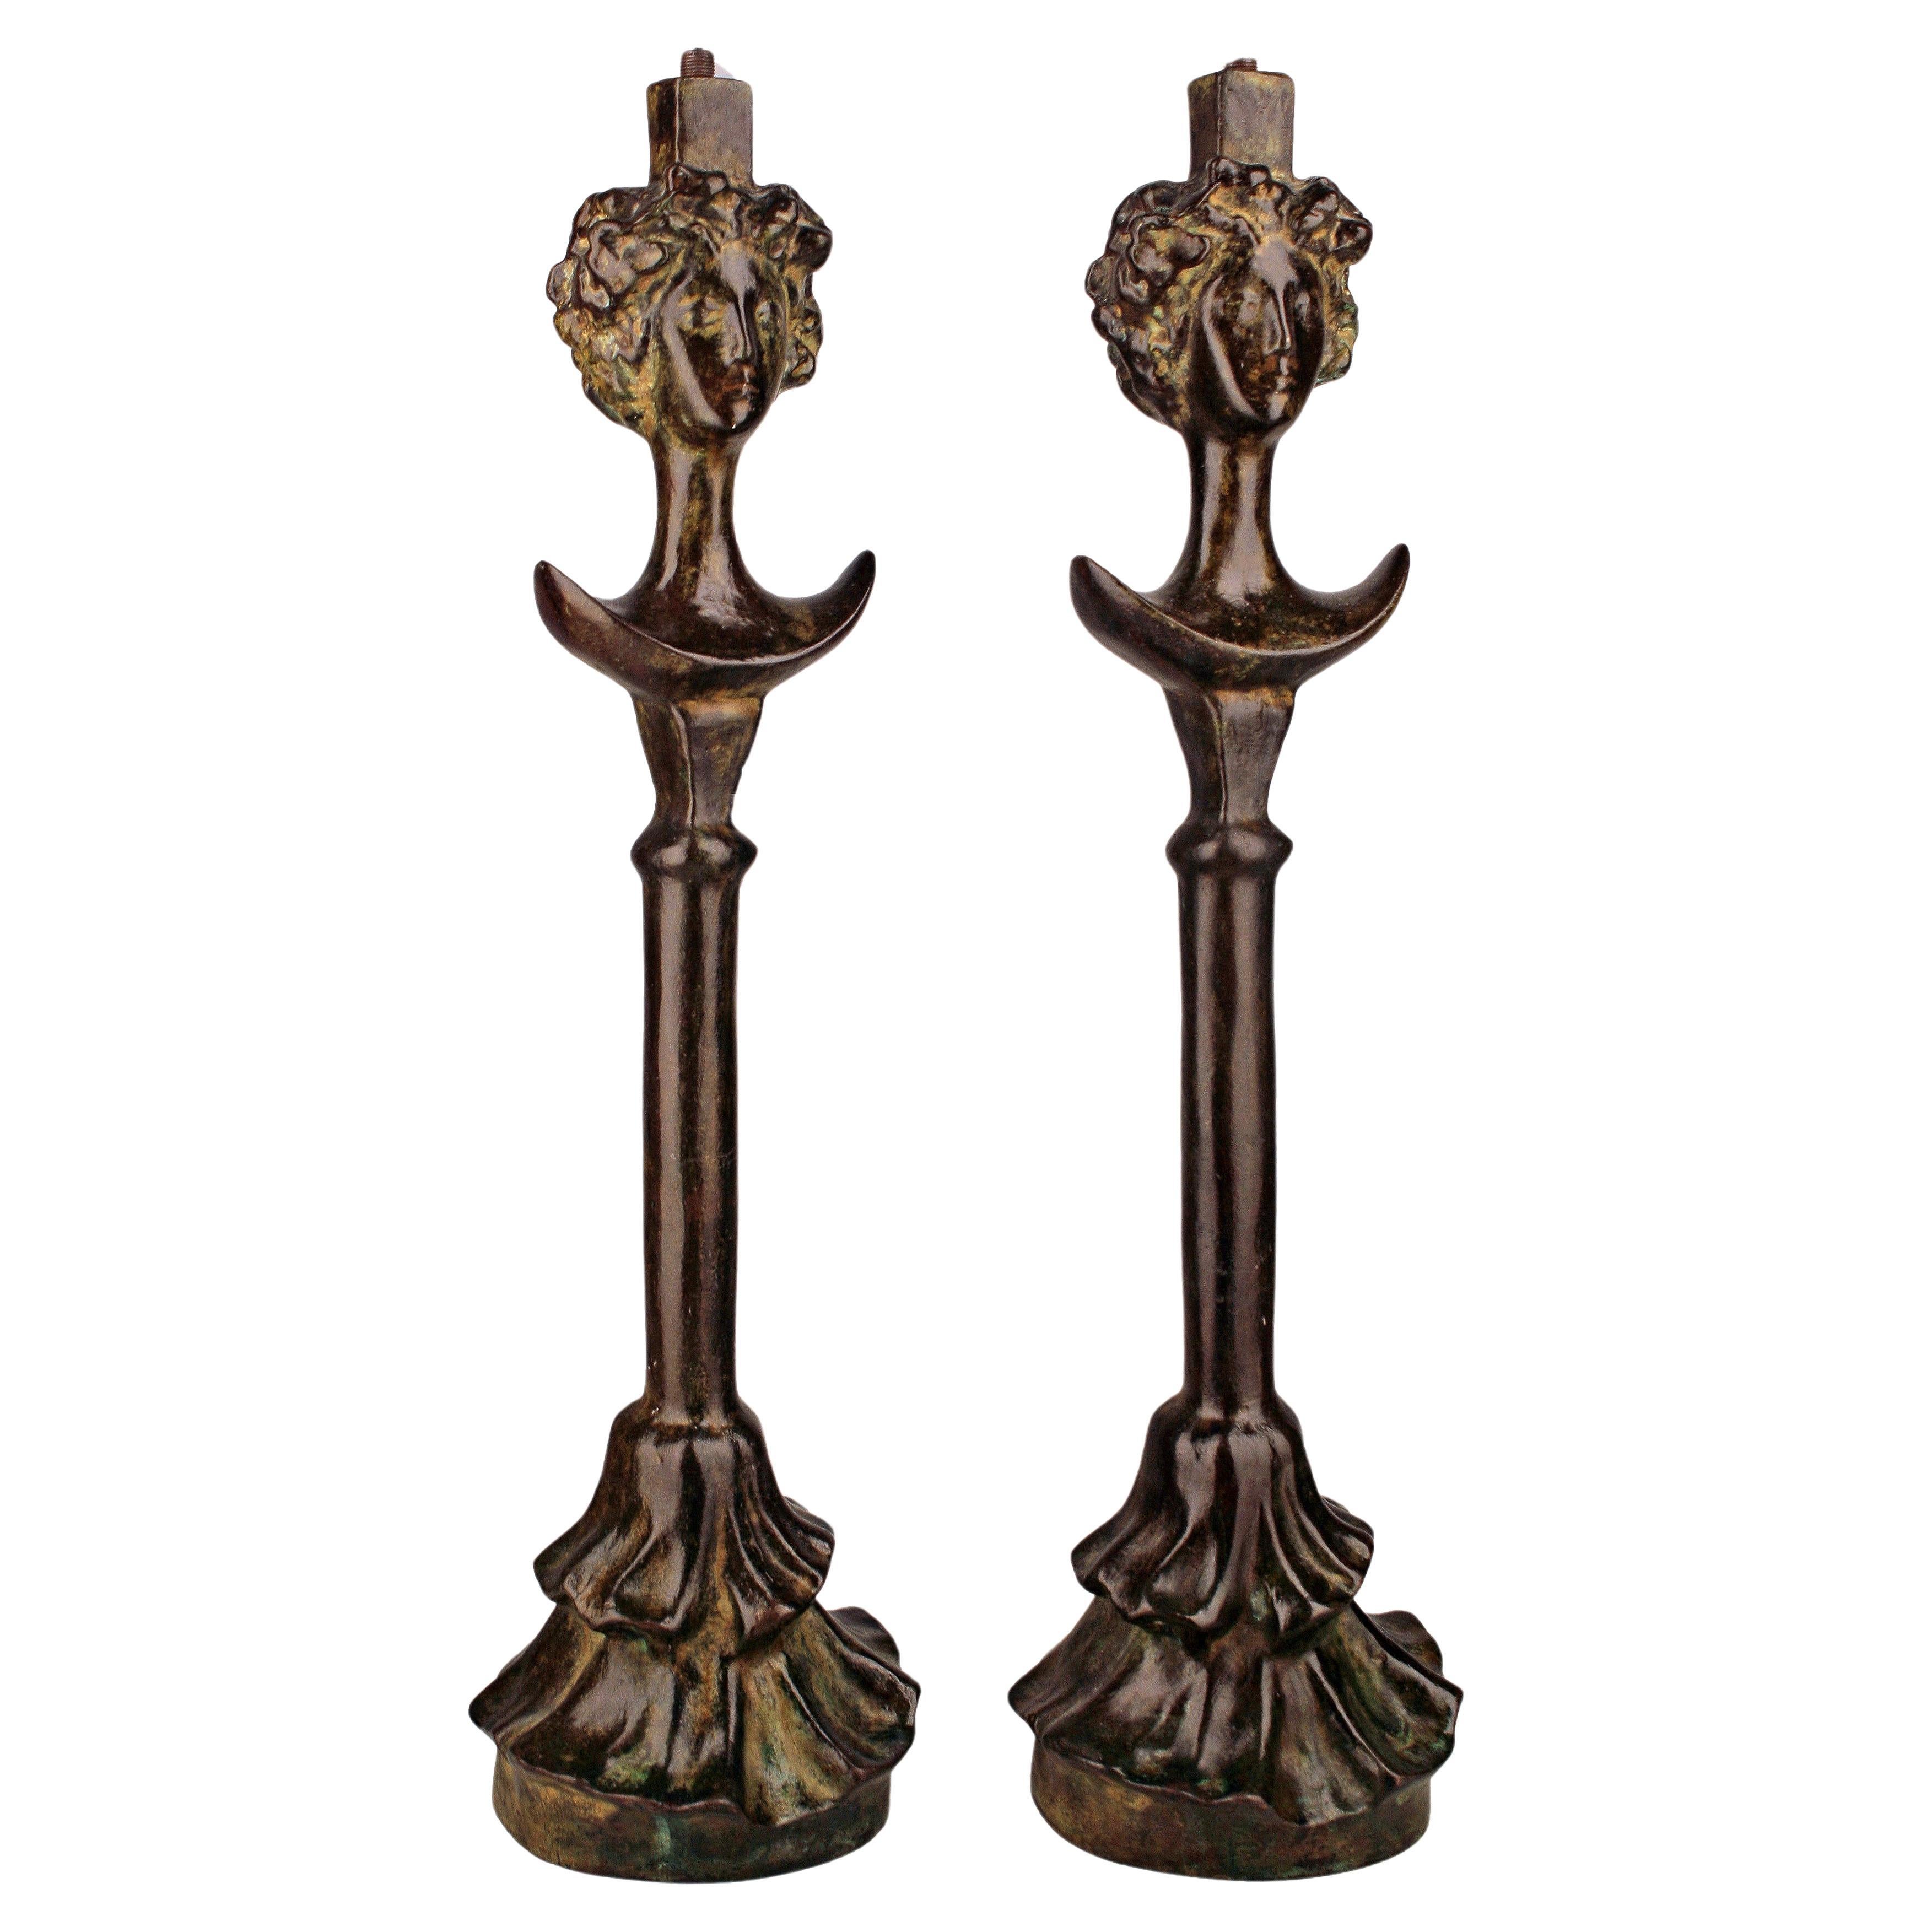 L'ensemble de lampes en bronze de The Collective s'inspire de la "Tête de Femme" de Giacometti